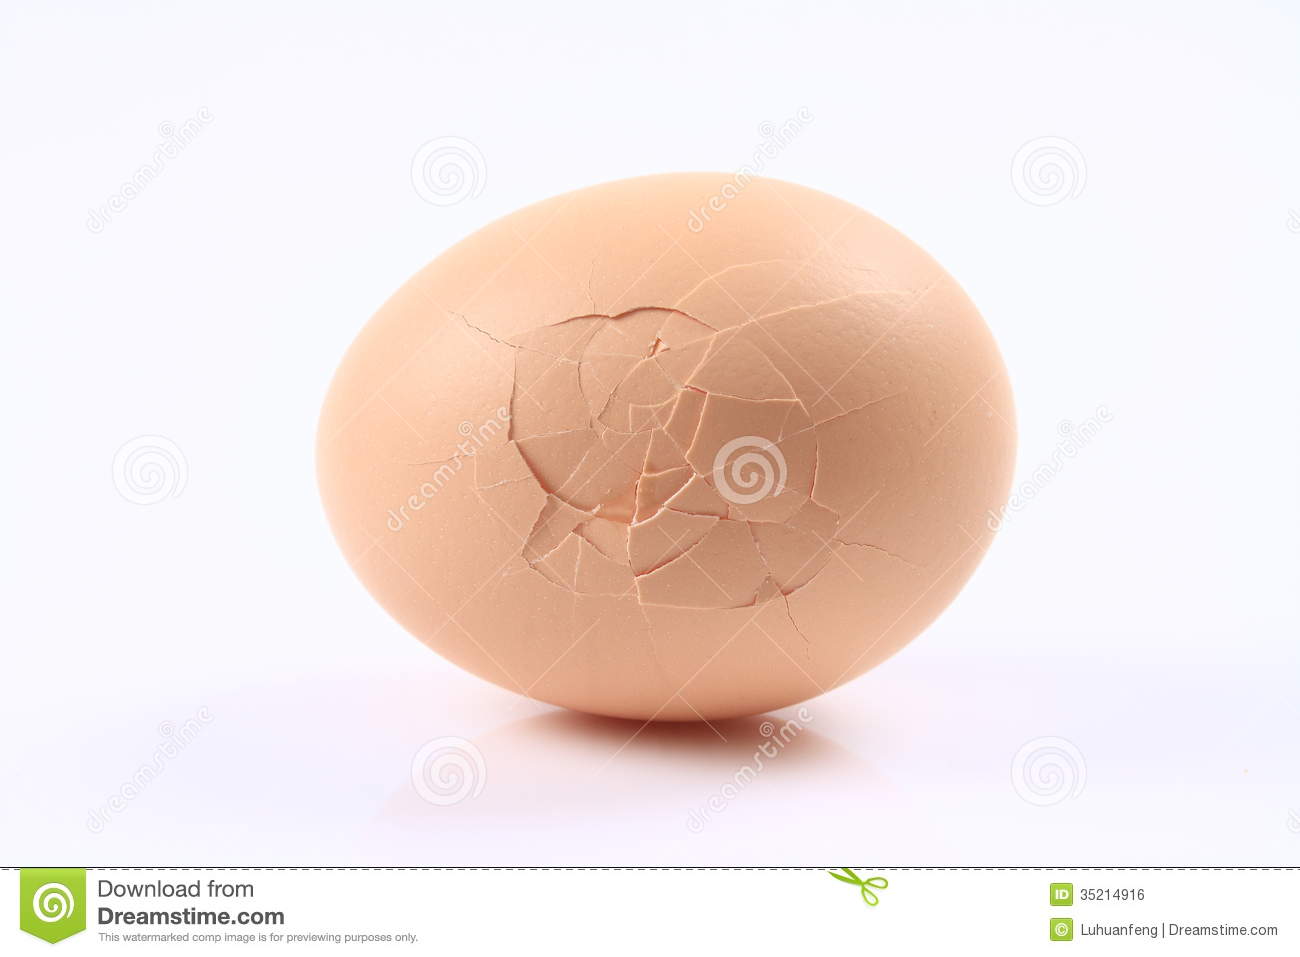 Cracked Egg Royalty Free Stock Image   Image  35214916